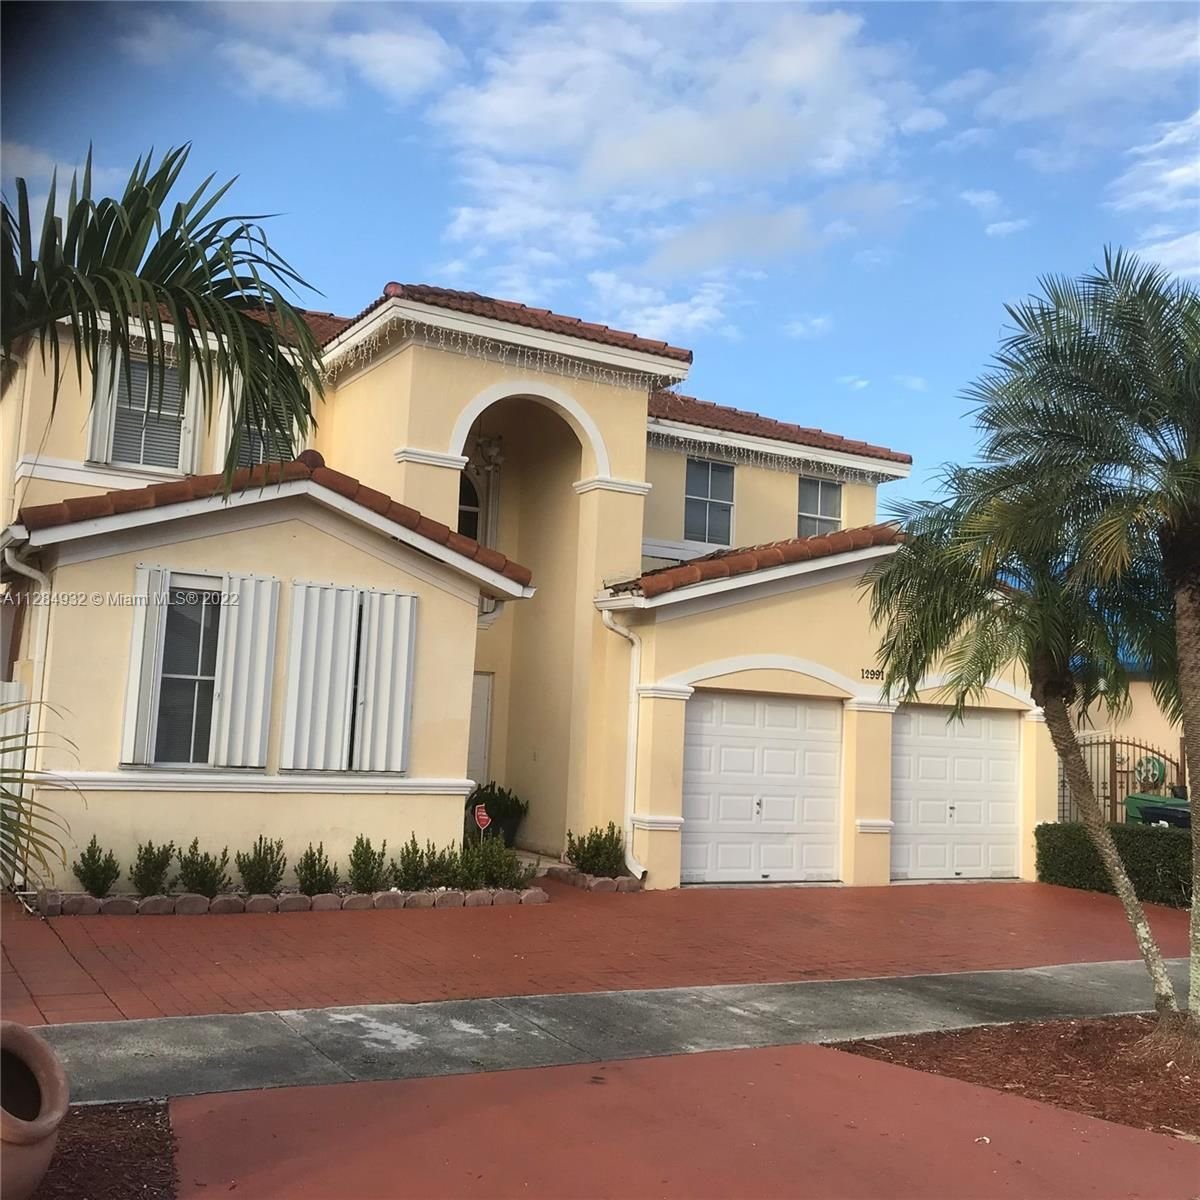 Real estate property located at 12991 9th Ln, Miami-Dade County, Miami, FL